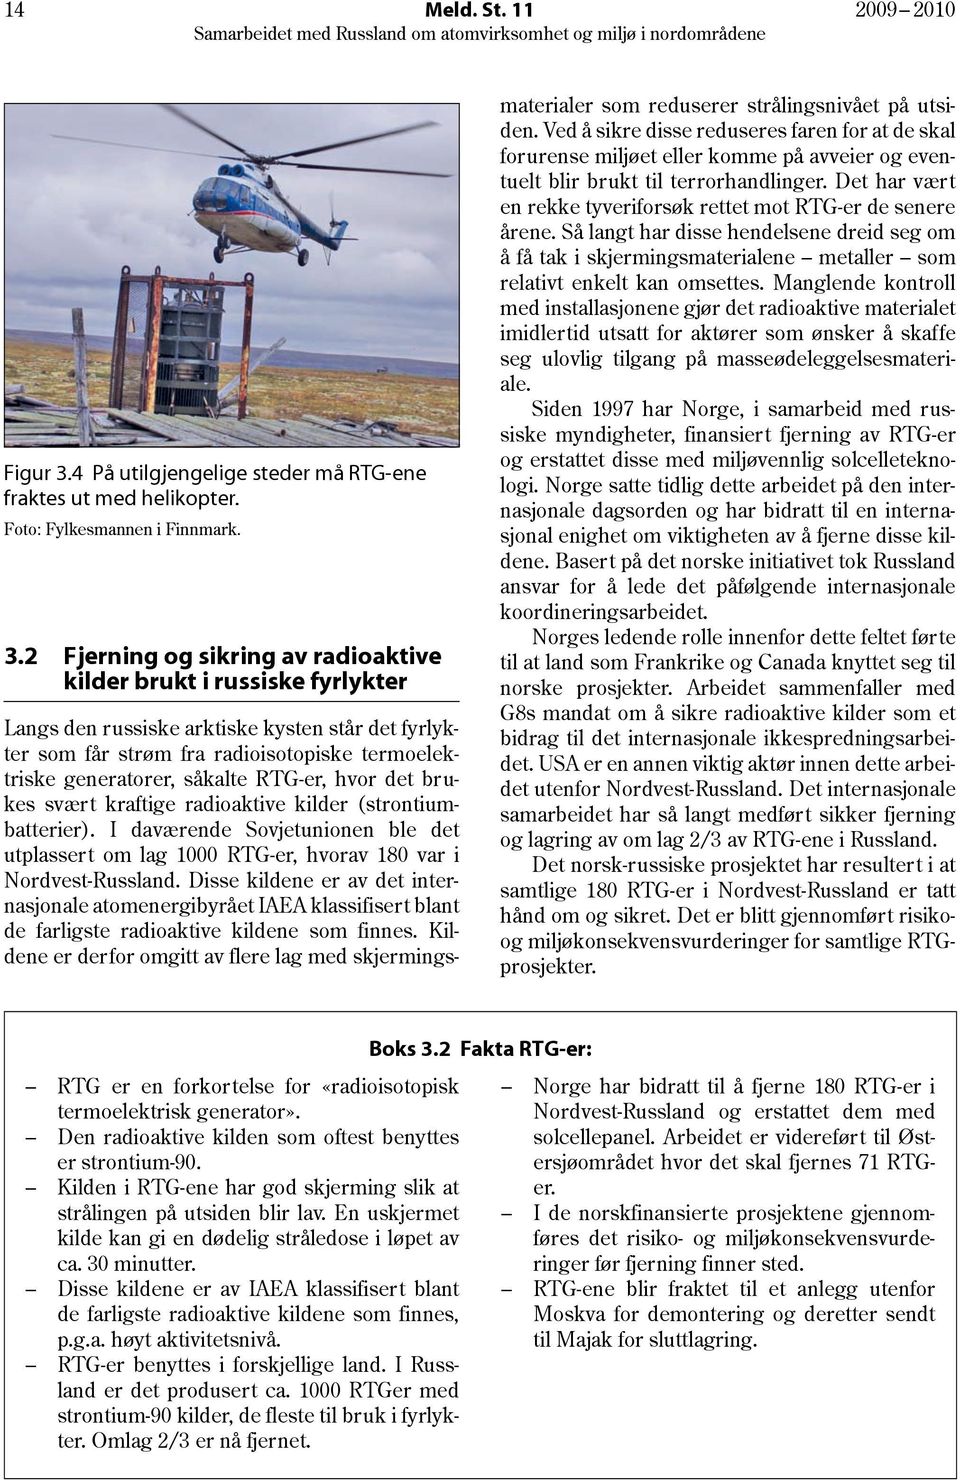 2 Fjerning og sikring av radioaktive kilder brukt i russiske fyrlykter Langs den russiske arktiske kysten står det fyrlykter som får strøm fra radioisotopiske termoelektriske generatorer, såkalte